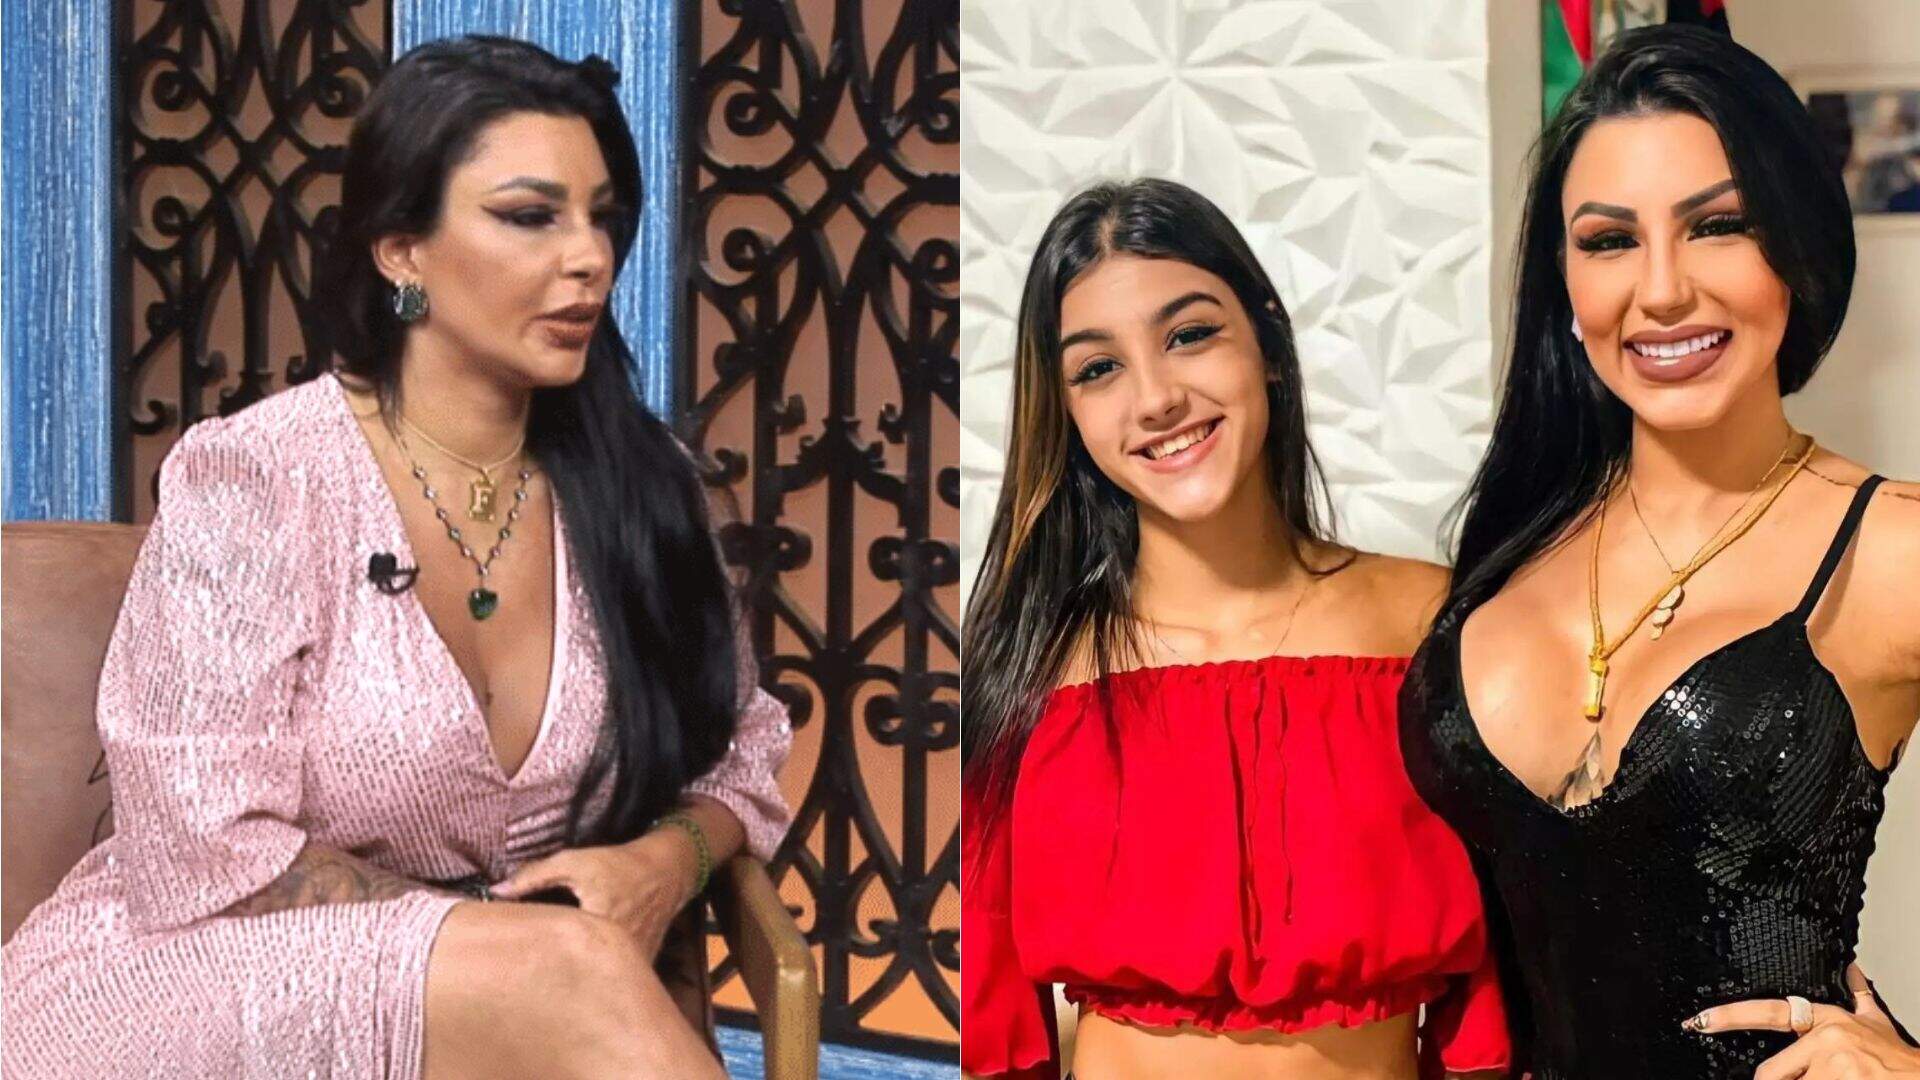 A Fazenda 15: Após eliminação, Jenny Miranda mostra indignação com a filha, Bia Miranda: “Muito influenciada” - Metropolitana FM